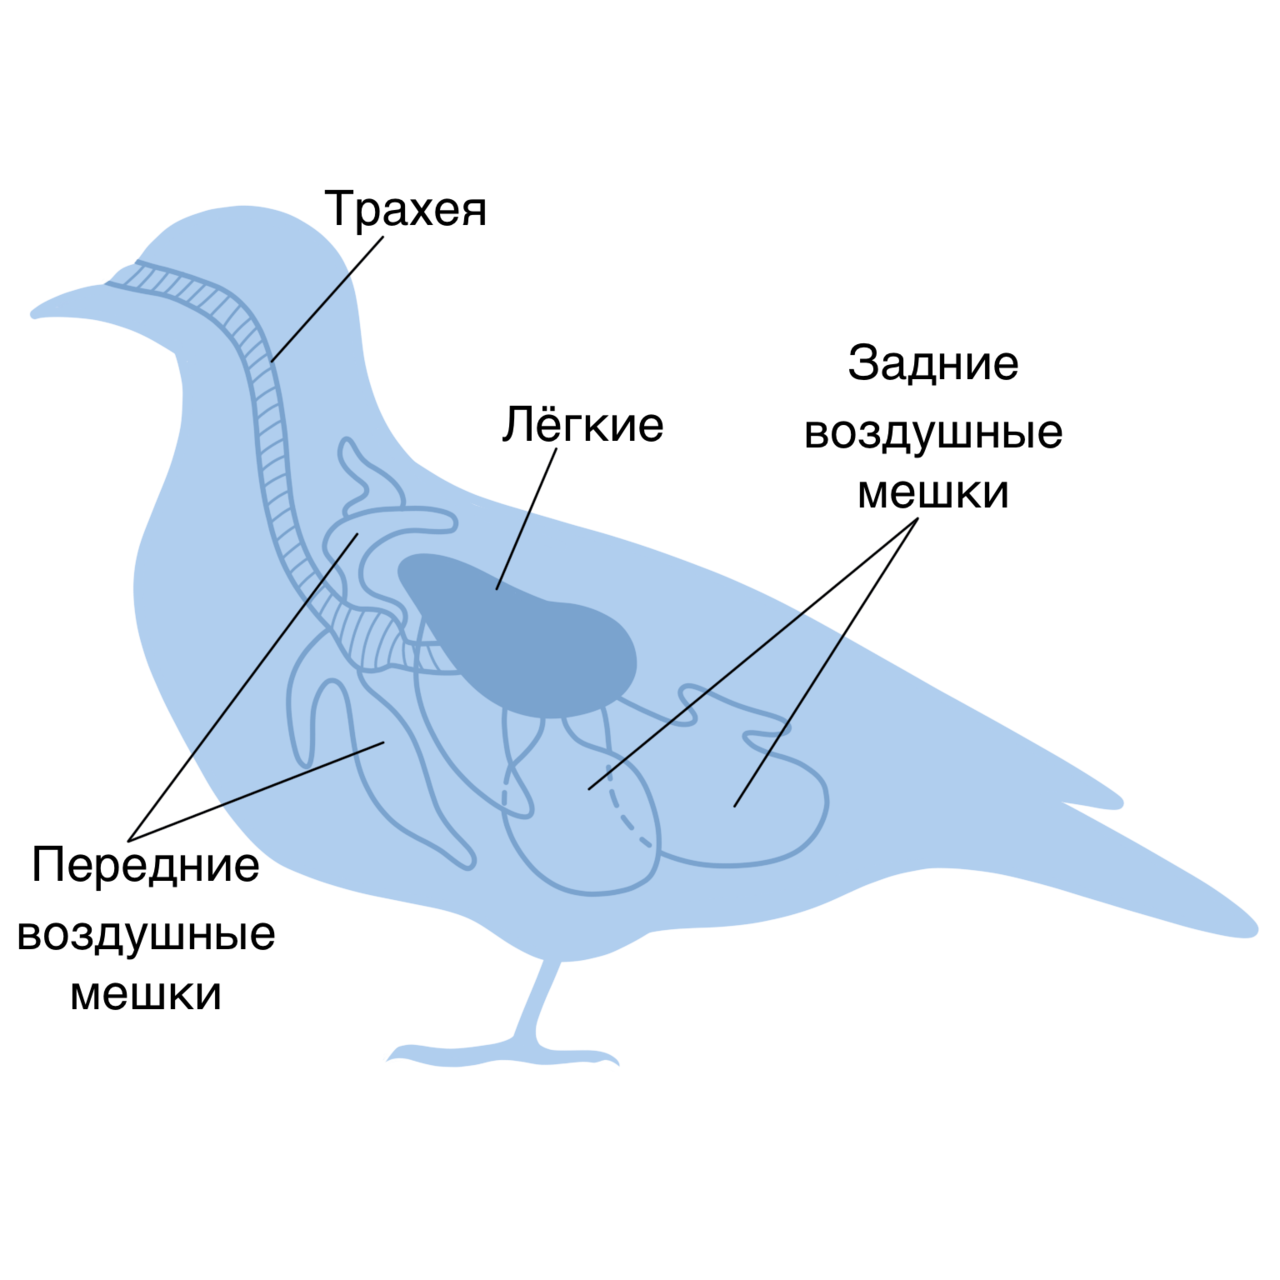 Дыхание птиц воздушные мешки. Дыхательная система у птиц органы строение. Внутреннее строение птиц система органов. Структура дыхательной системы птиц. Дыхательная система птиц воздушные мешки.